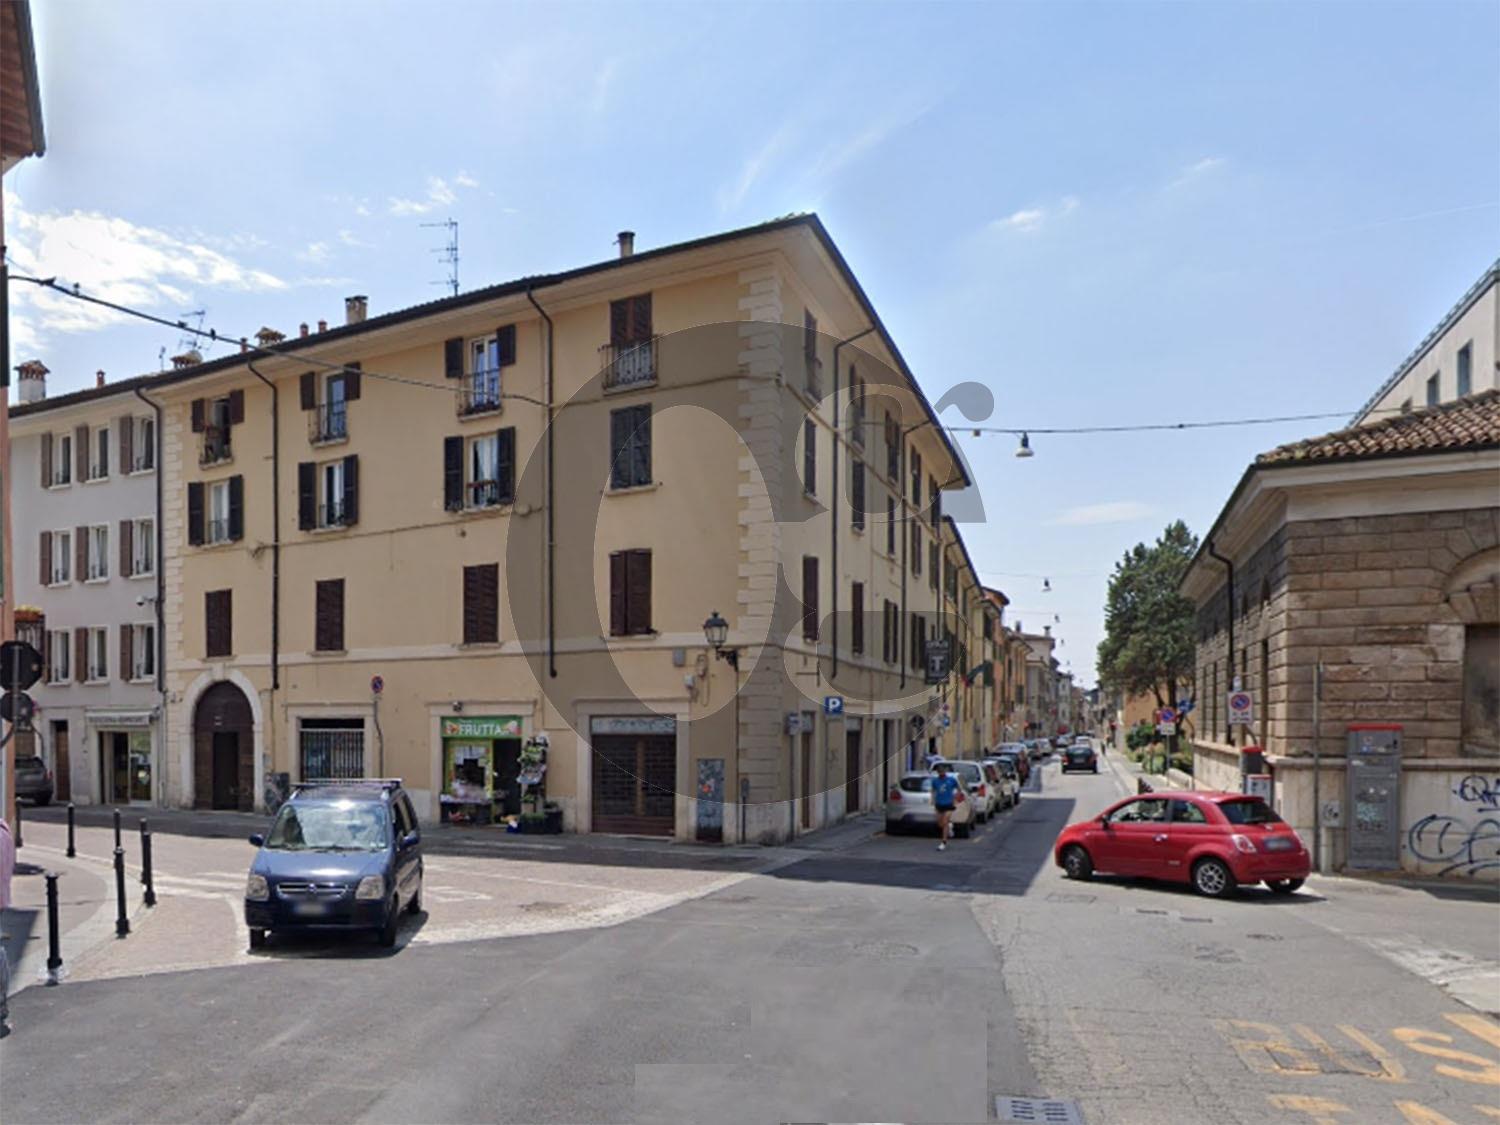 Locale commerciale in vendita a Brescia